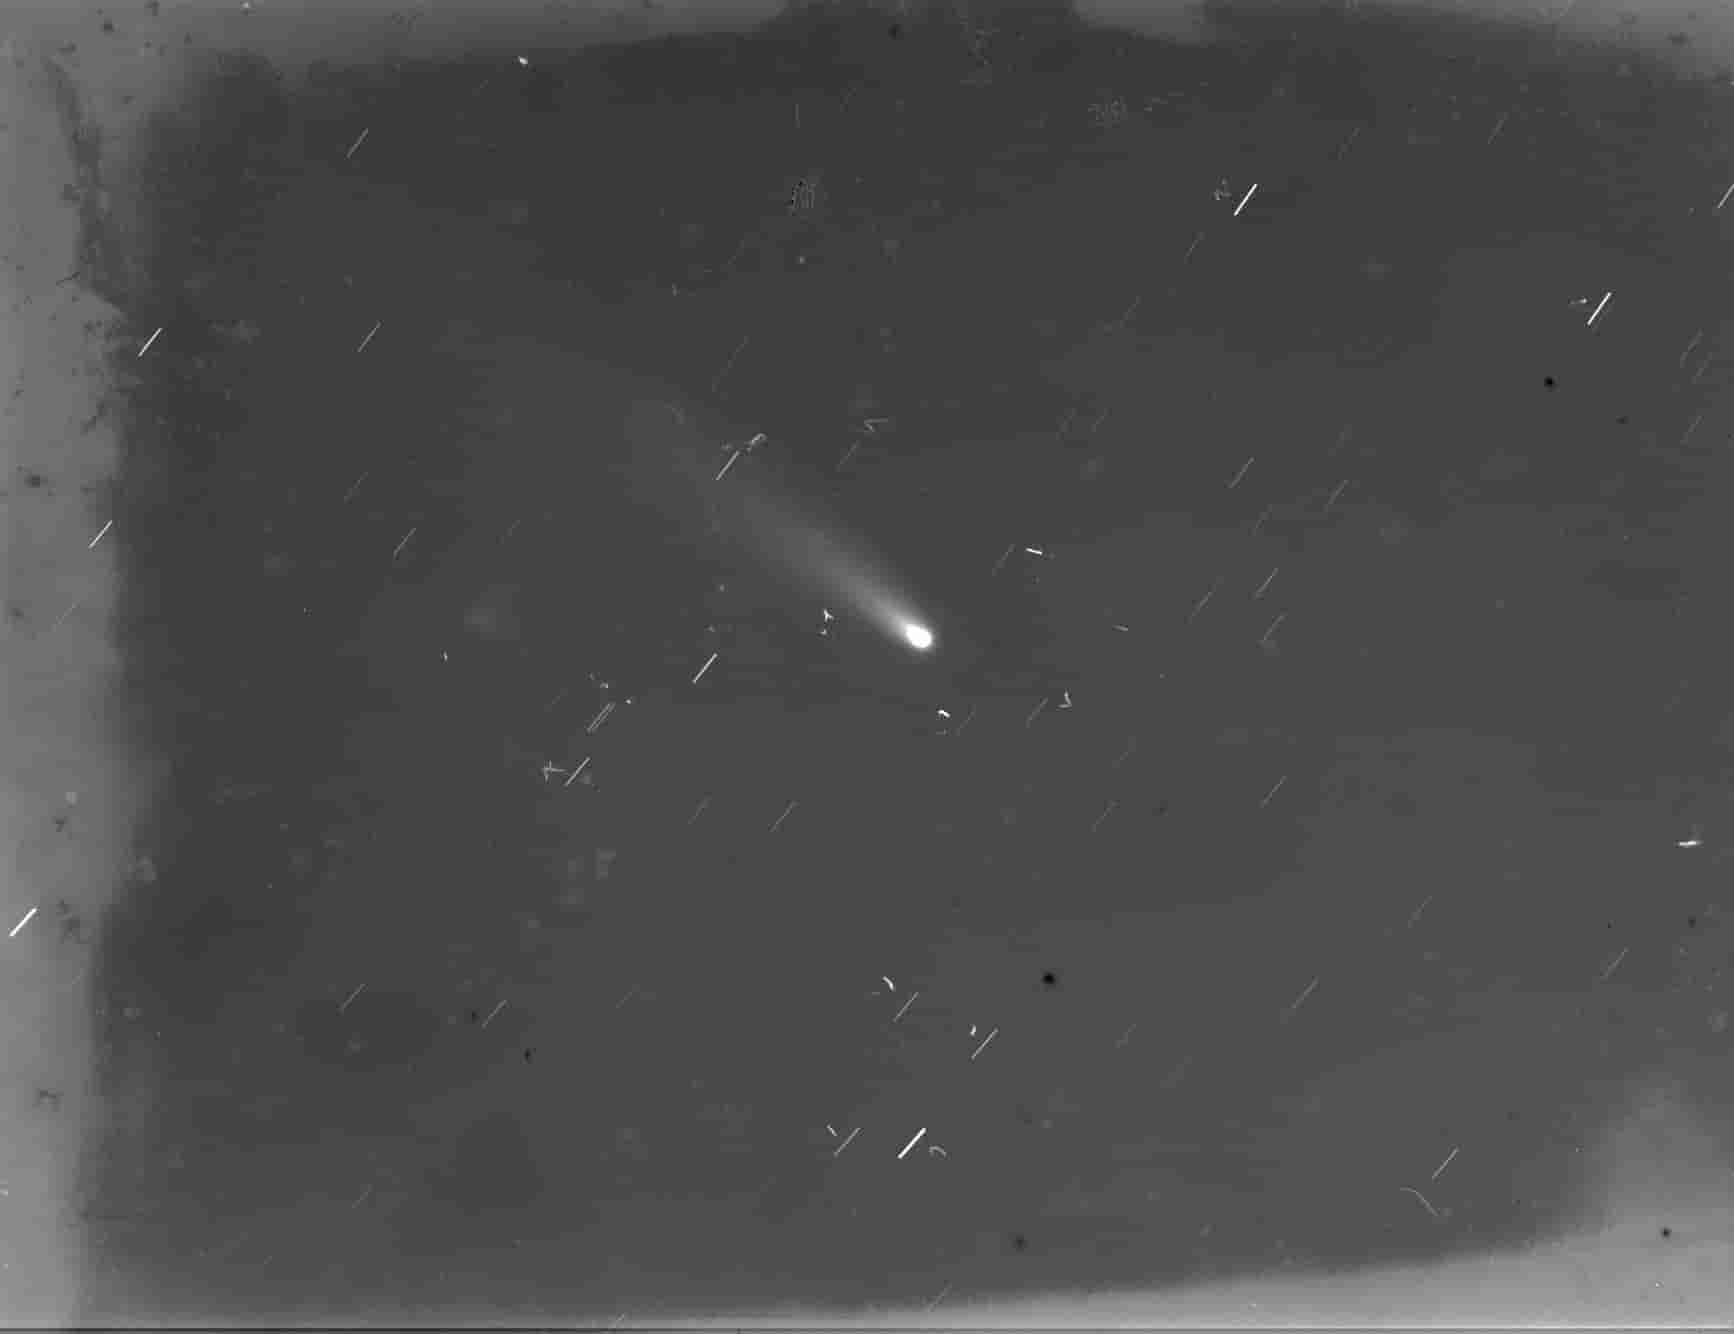 A passagem do cometa Halley em 1986 e seu registro no Observatório Nacional